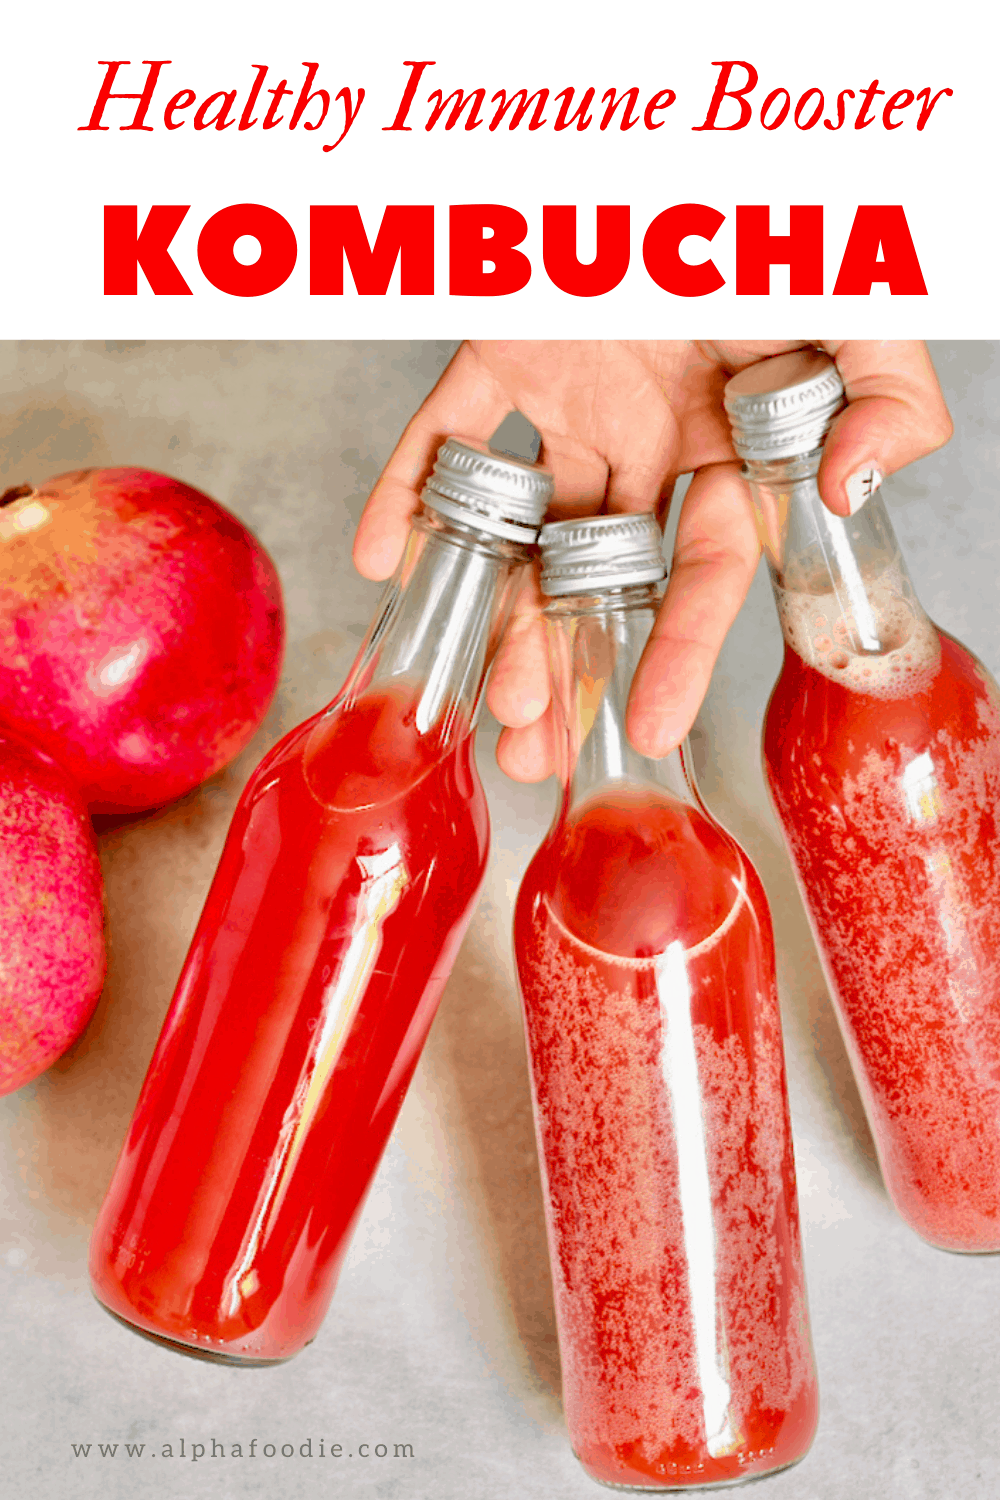 Kombucha recipe